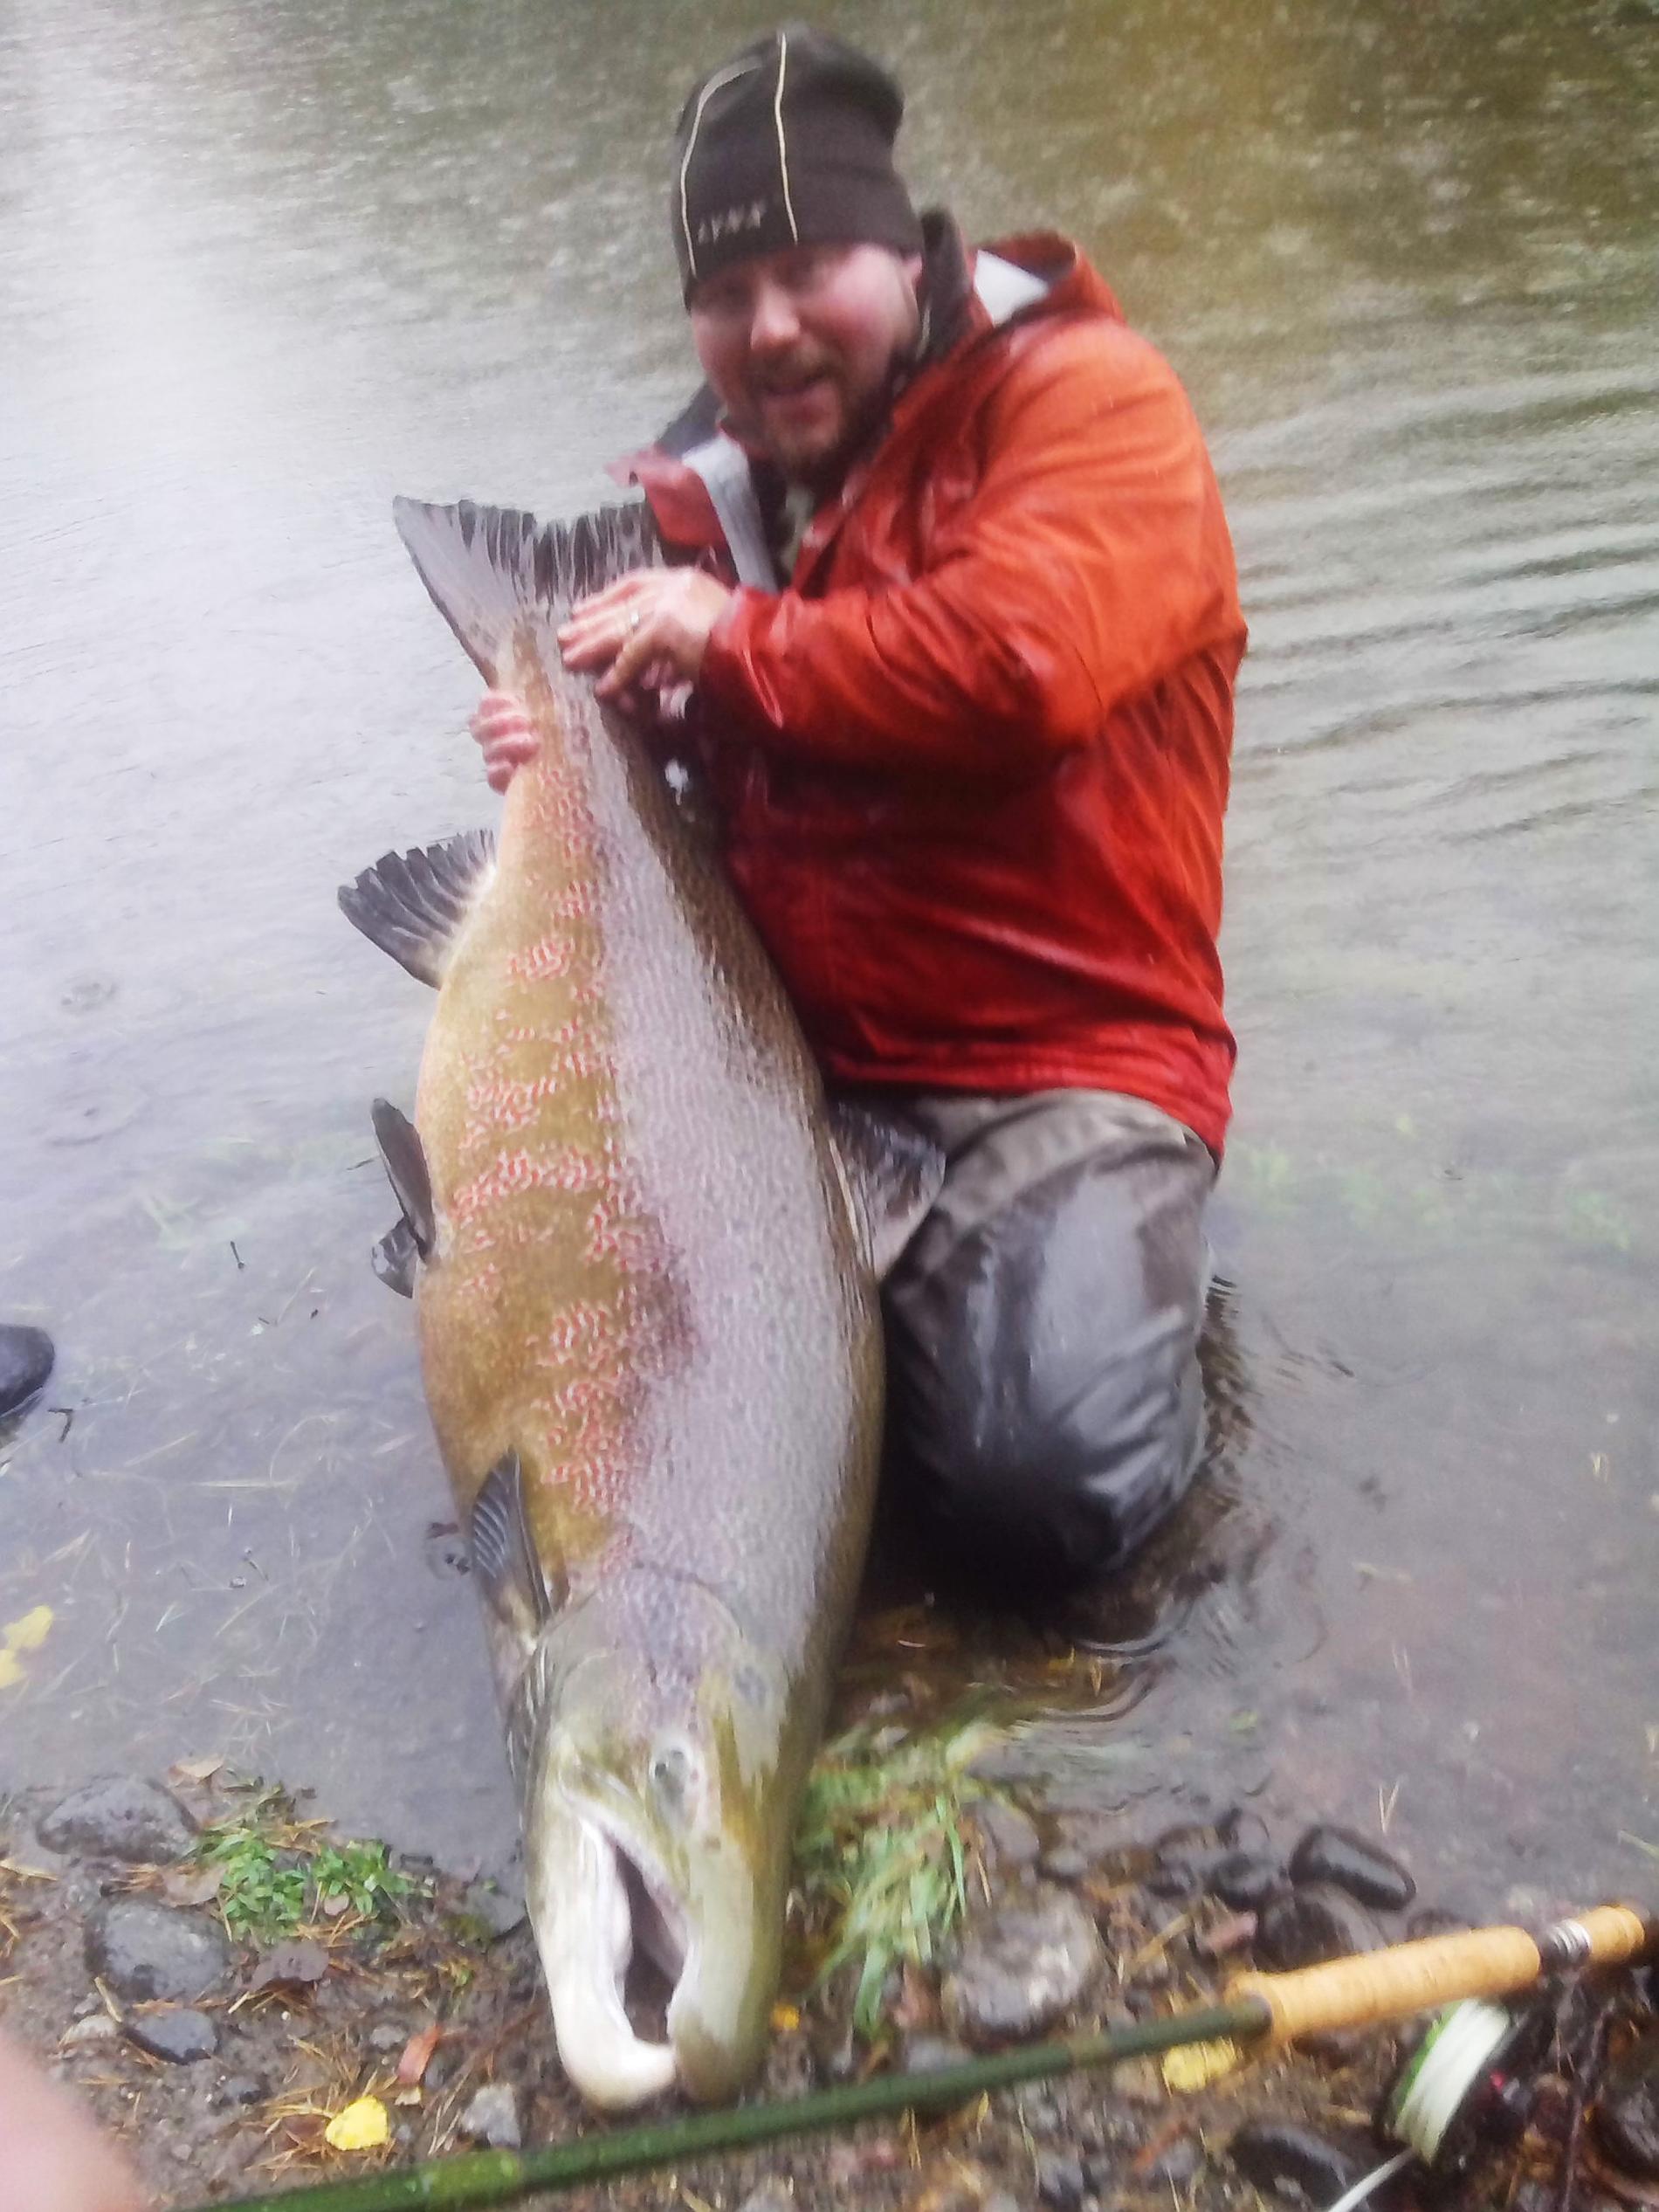 Magnus Fagerström i Bergsjö fångade i fredags en lax på 127cm och uppskattad vikt till runt 25kg i Ljungan. En av dom största tagen på flugspö i Sverige. Det tog 40 minuter att få upp fisken.